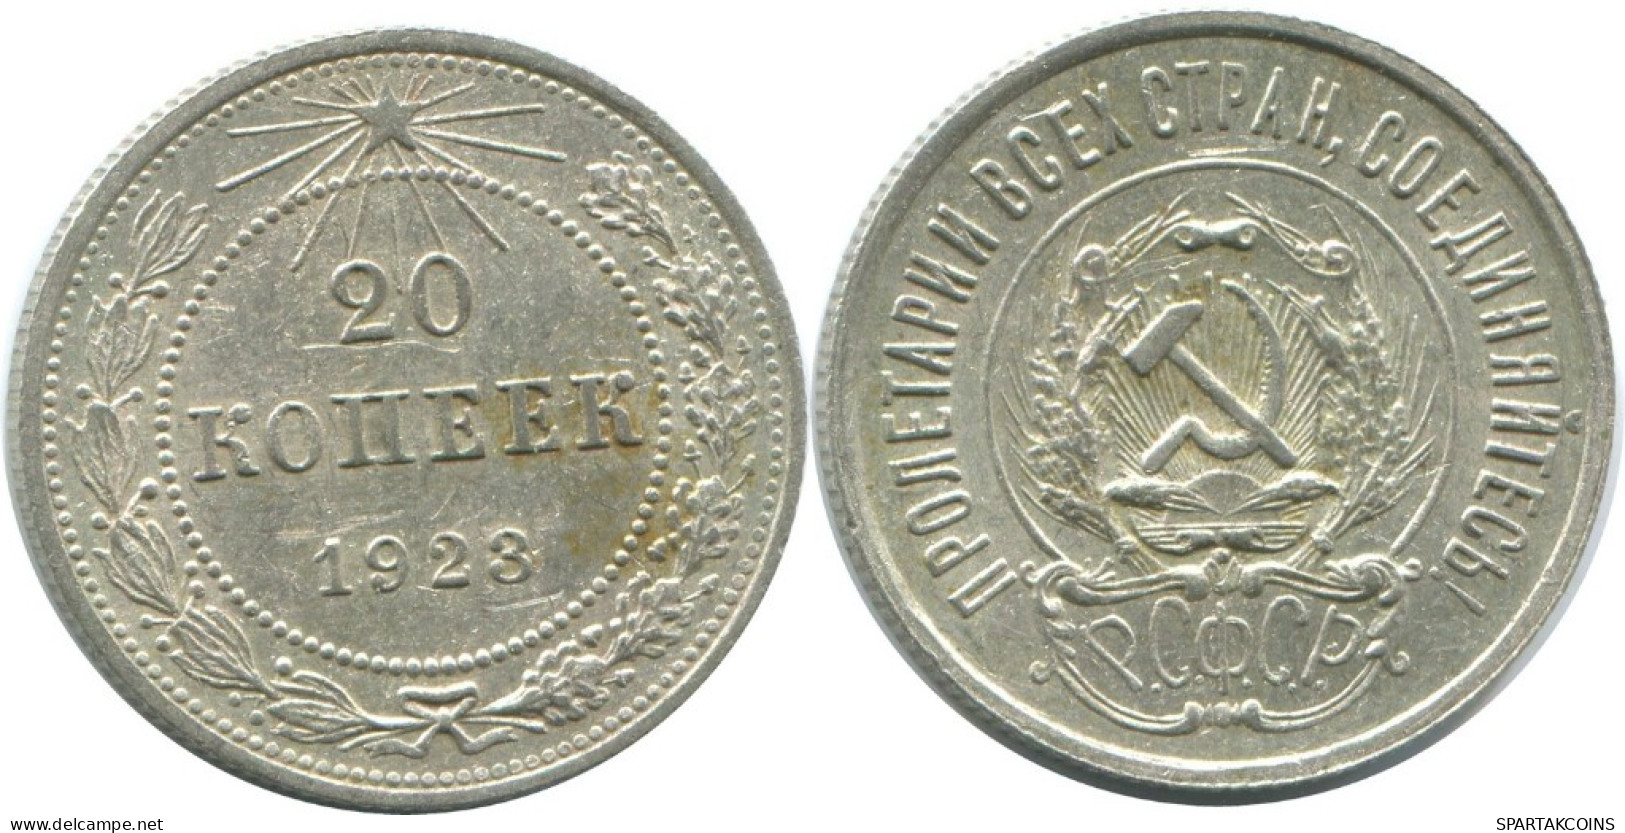 20 KOPEKS 1923 RUSIA RUSSIA RSFSR PLATA Moneda HIGH GRADE #AF700.E.A - Russland